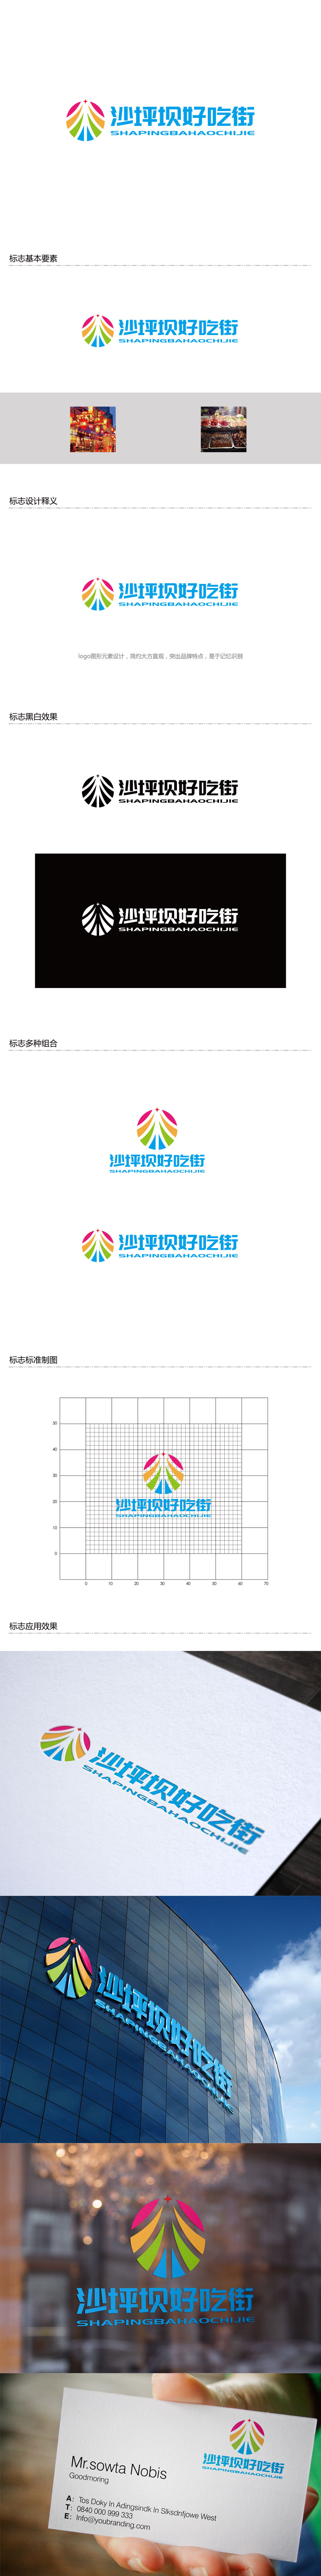 孙金泽的沙坪坝好吃街（重新编辑需求）logo设计